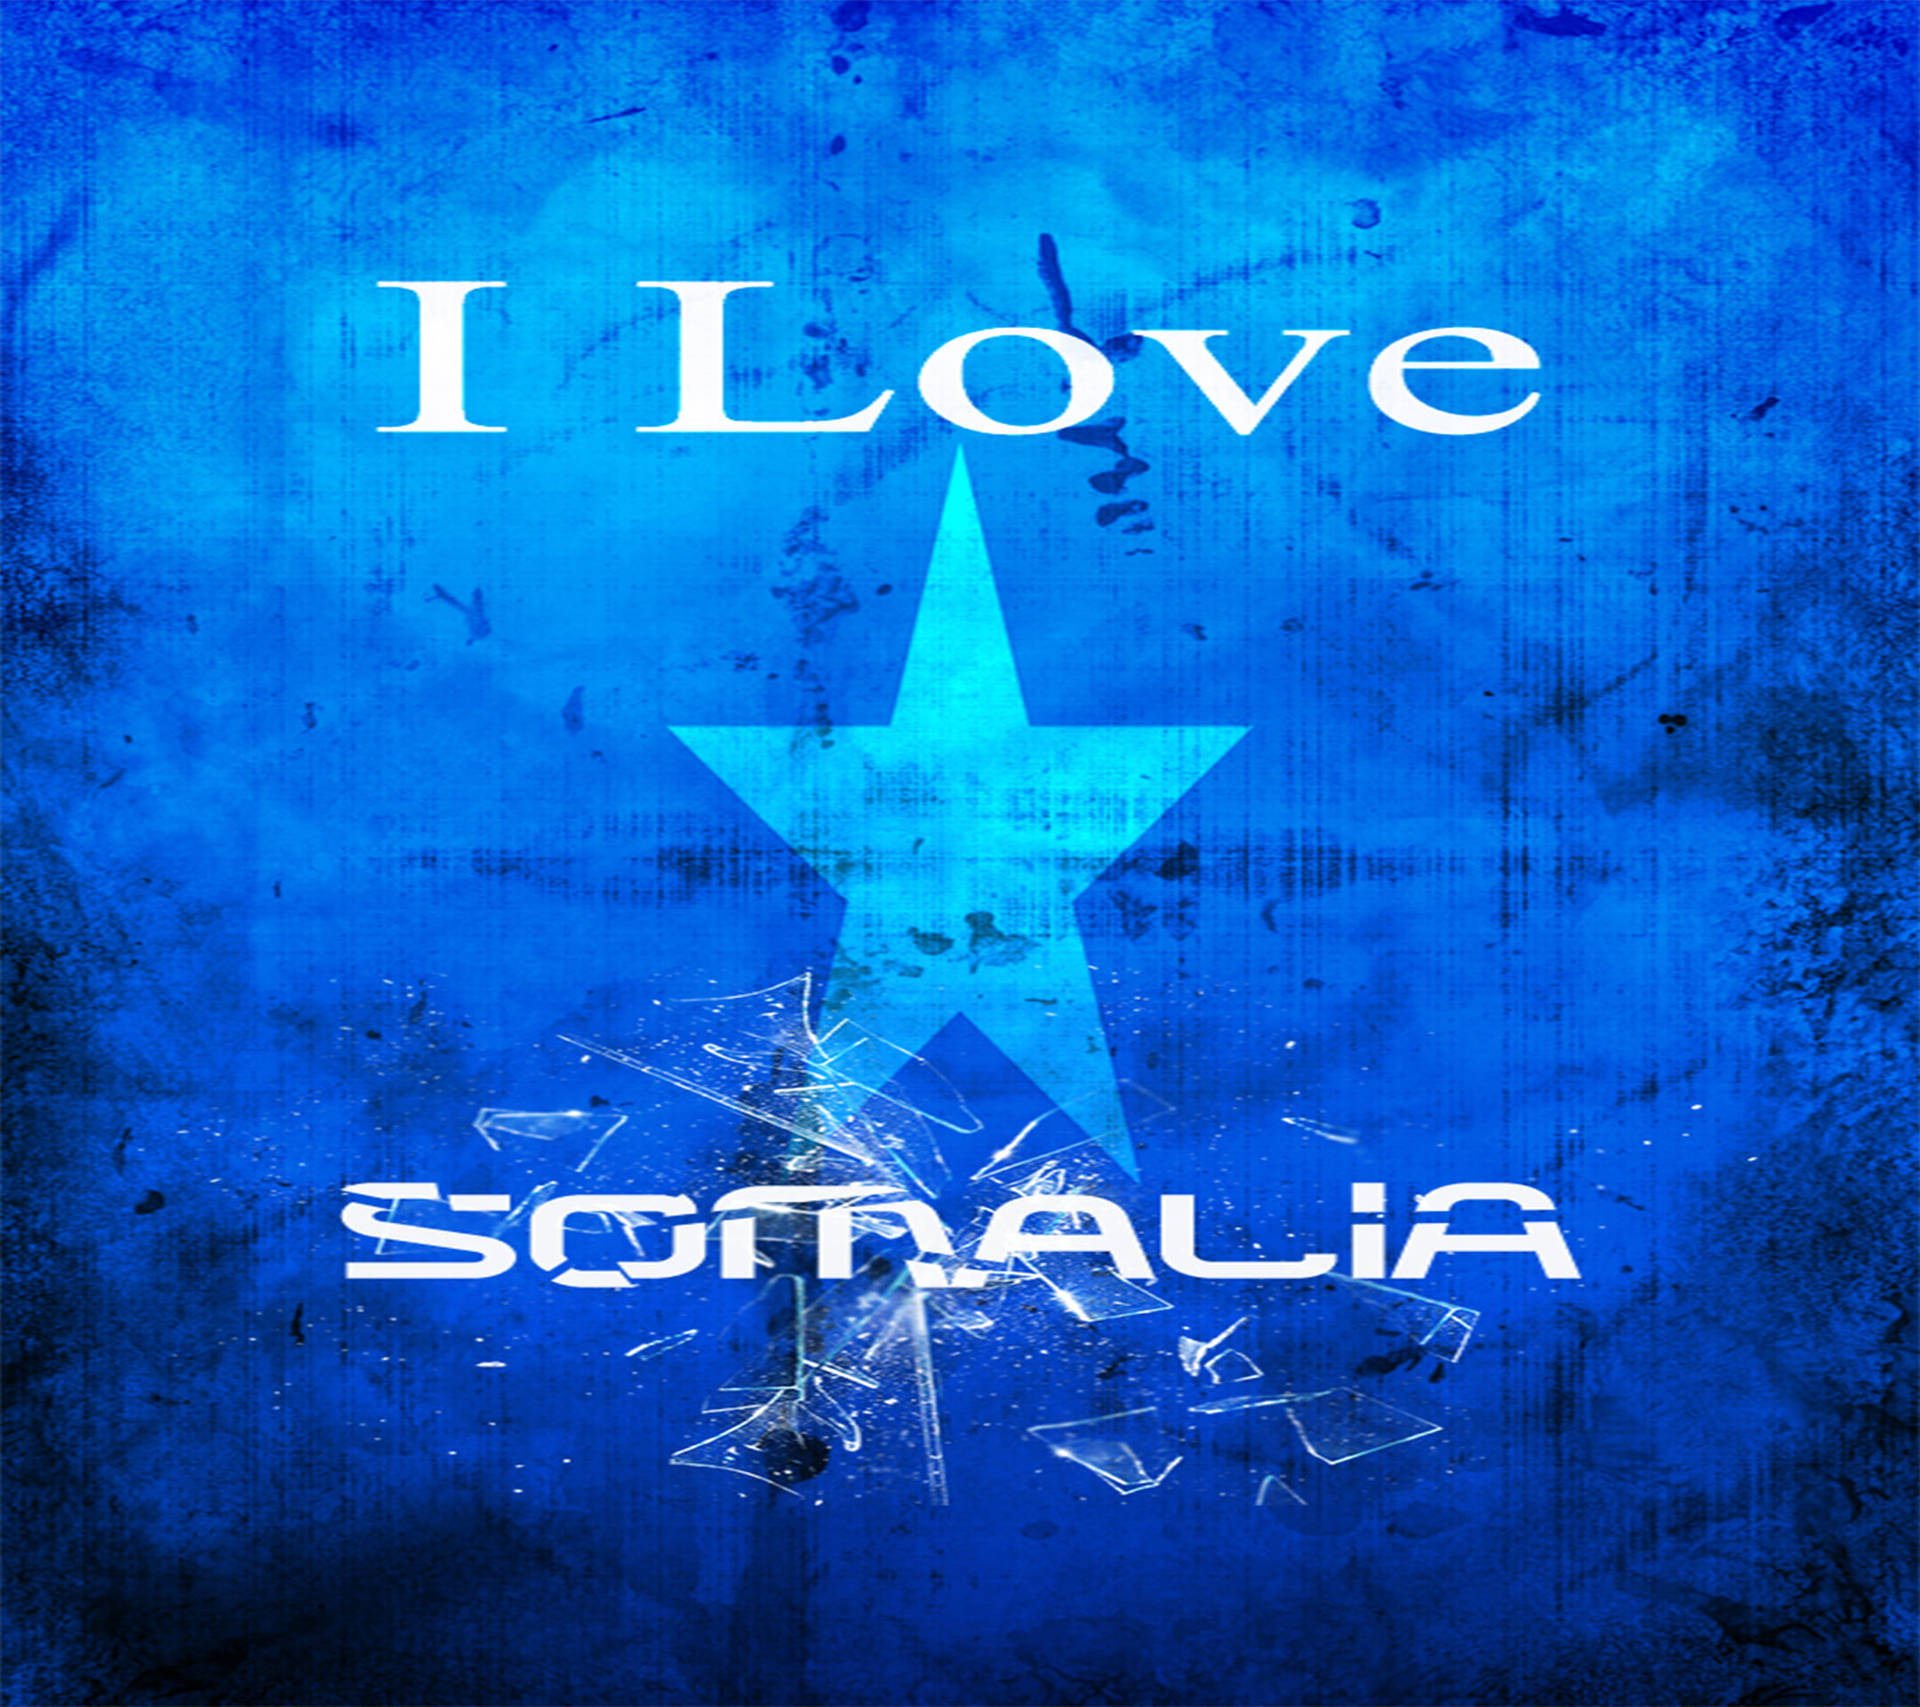 Jagälskar Somalia. Wallpaper